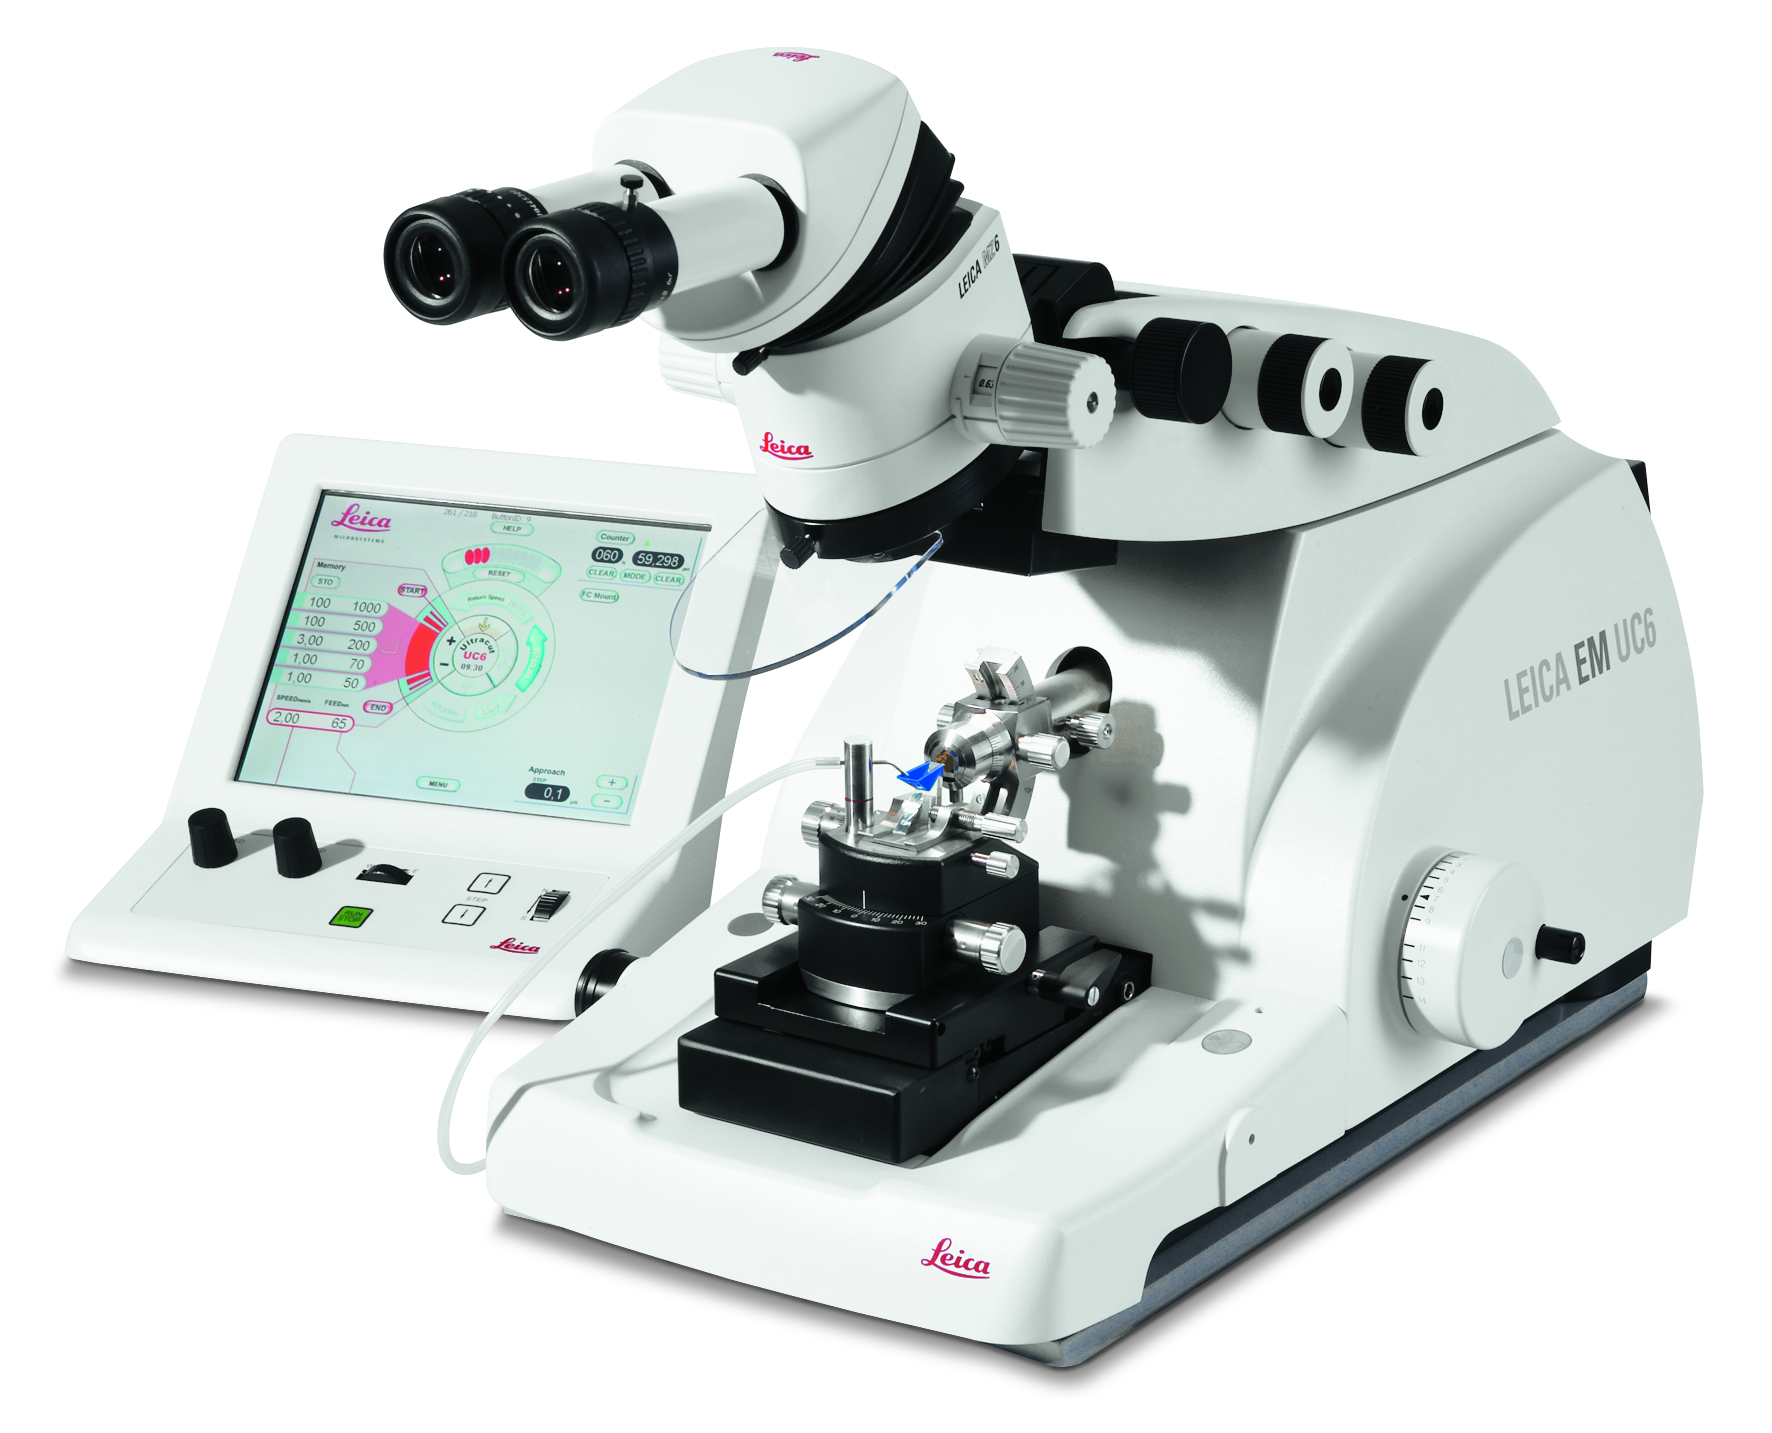 Le Leica EM UC6 Ultramicrotome pour une coupe ultramince des échantillons biologiques et industriels